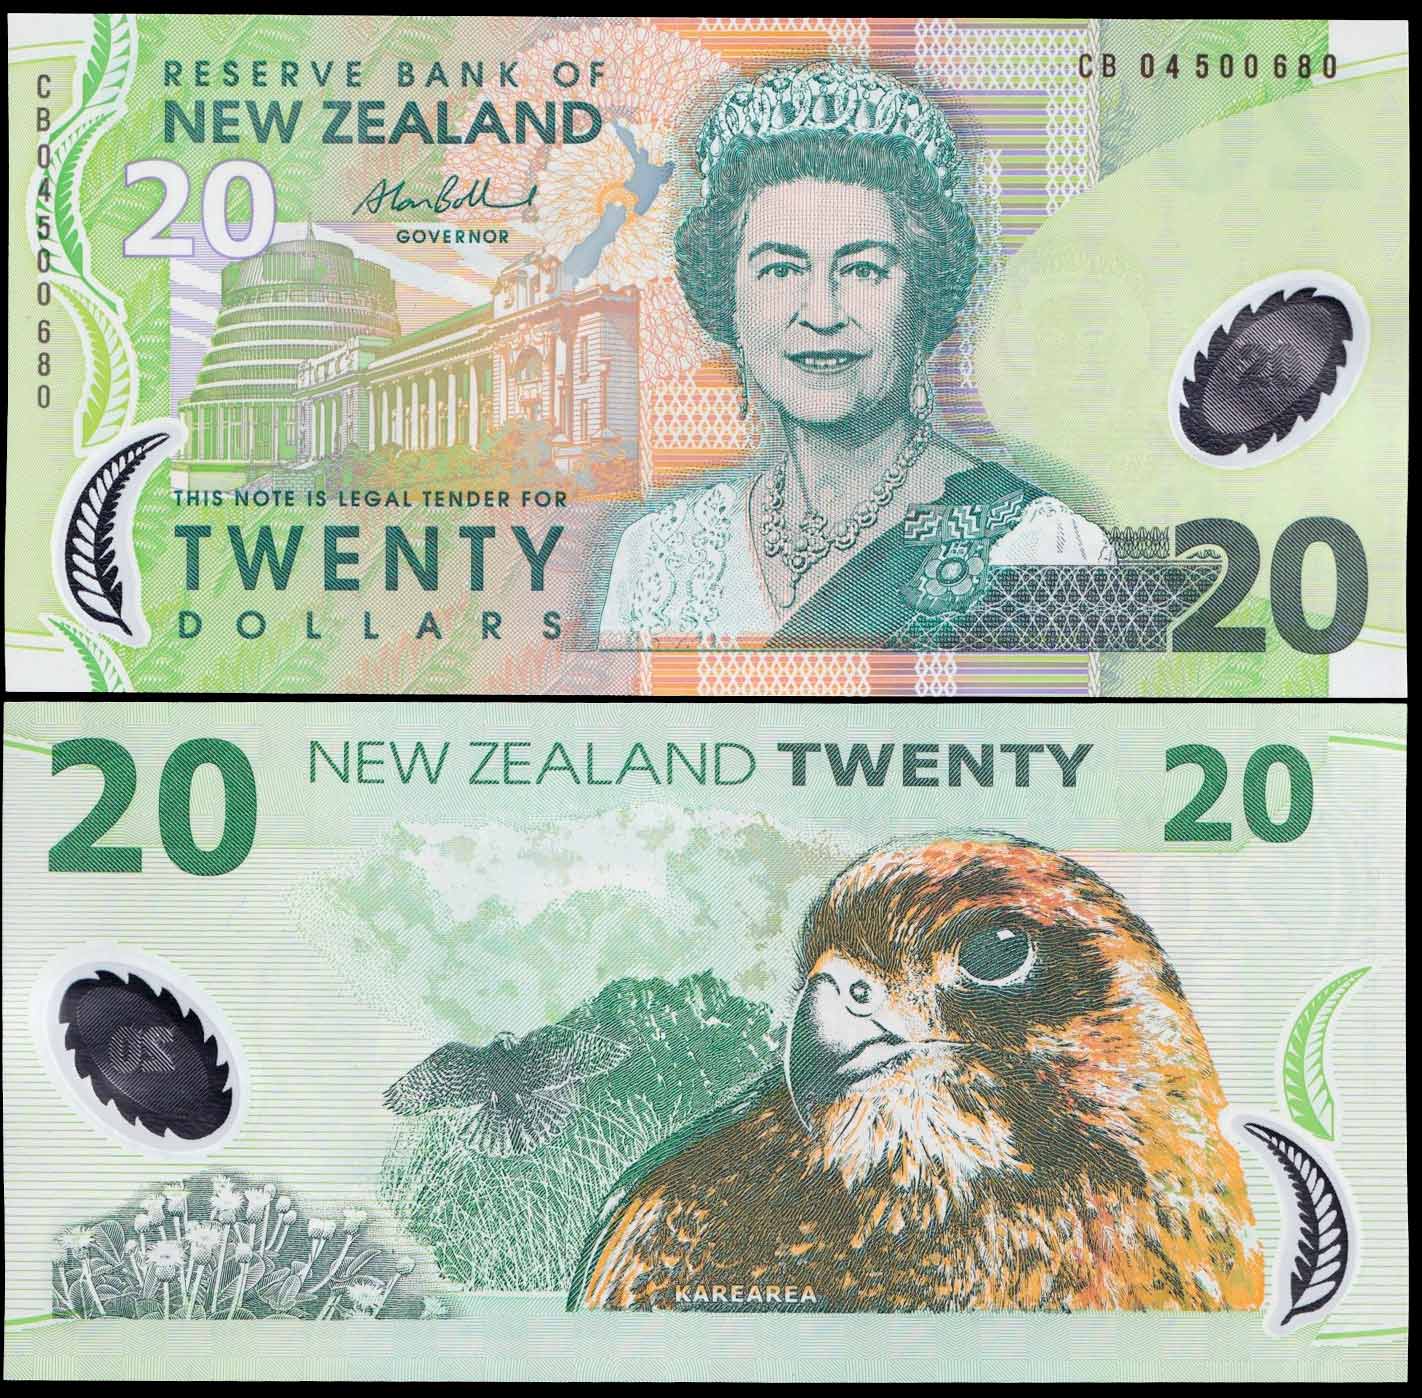 NUOVA ZELANDA 20 DOLLARS 2005 Fior di Stampa